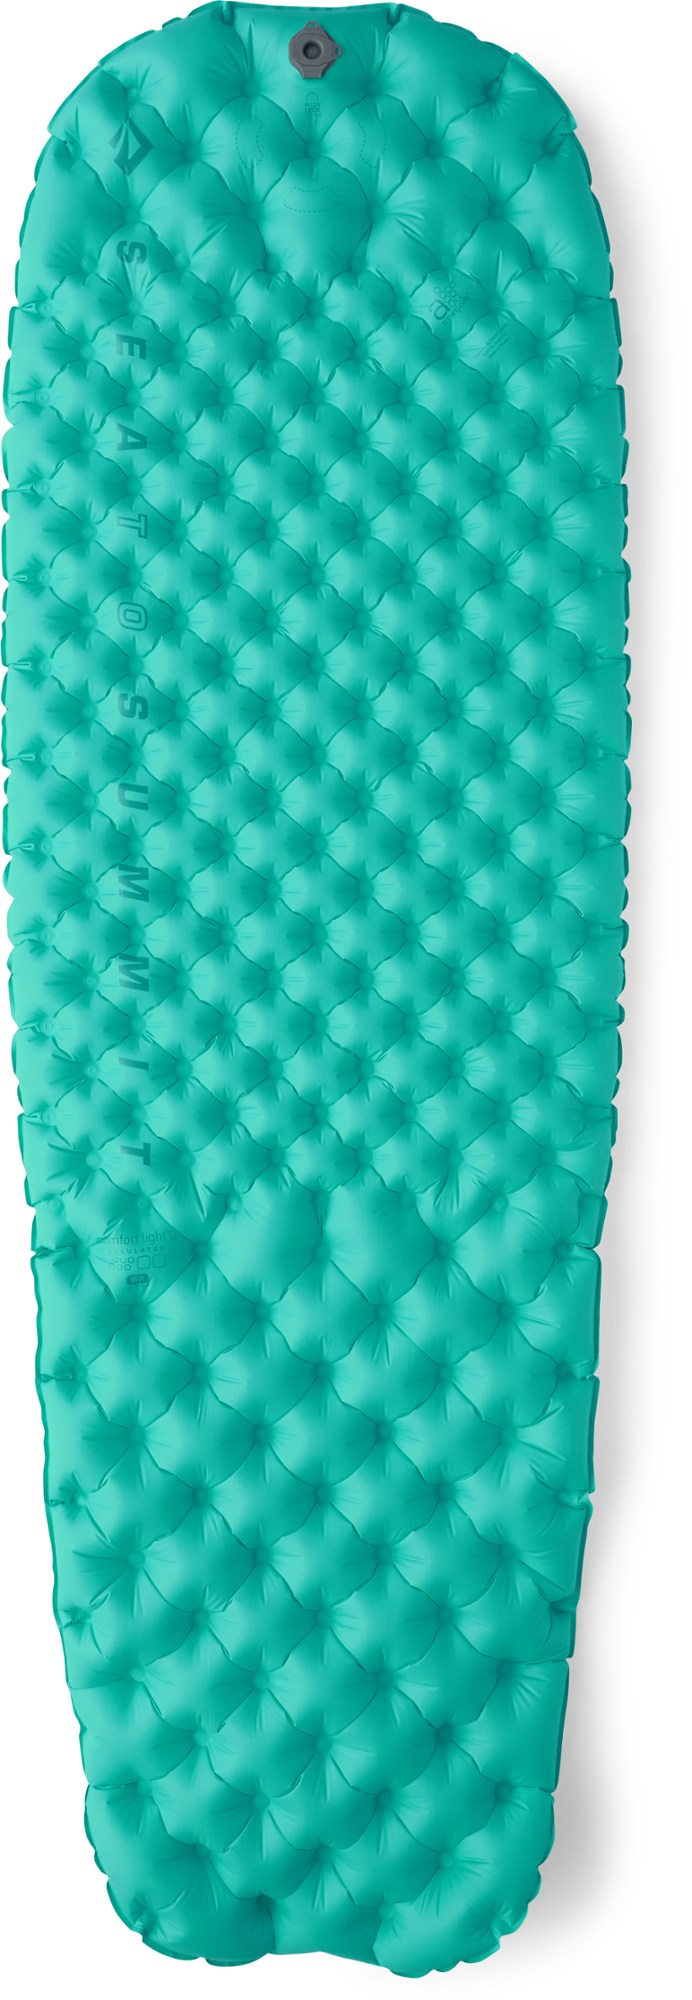 Легкий изолирующий воздушный спальный коврик Comfort — женский Sea to Summit, синий